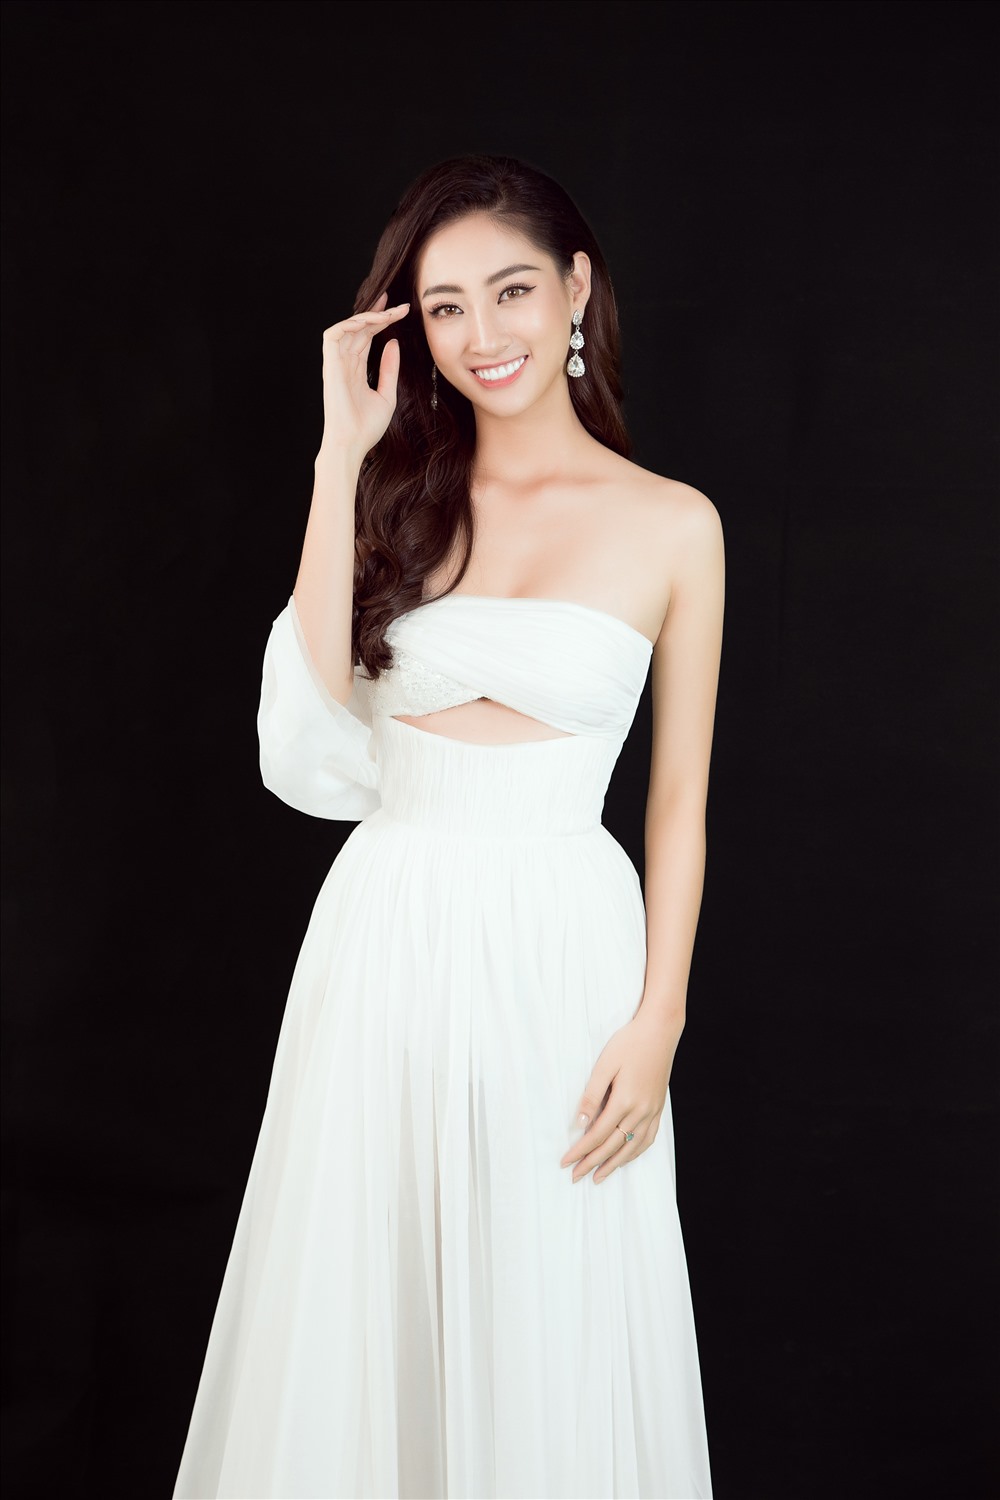 Hoa hậu Lương Thùy Linh - đại diện Việt Nam tại Miss World 2019 đã thể hiện được sự chuẩn bị chỉn chu và tinh thần “thiện chiến” của mình qua các phần thi phụ khi liên tiếp gặt hái được nhiều thành tích ấn tượng.